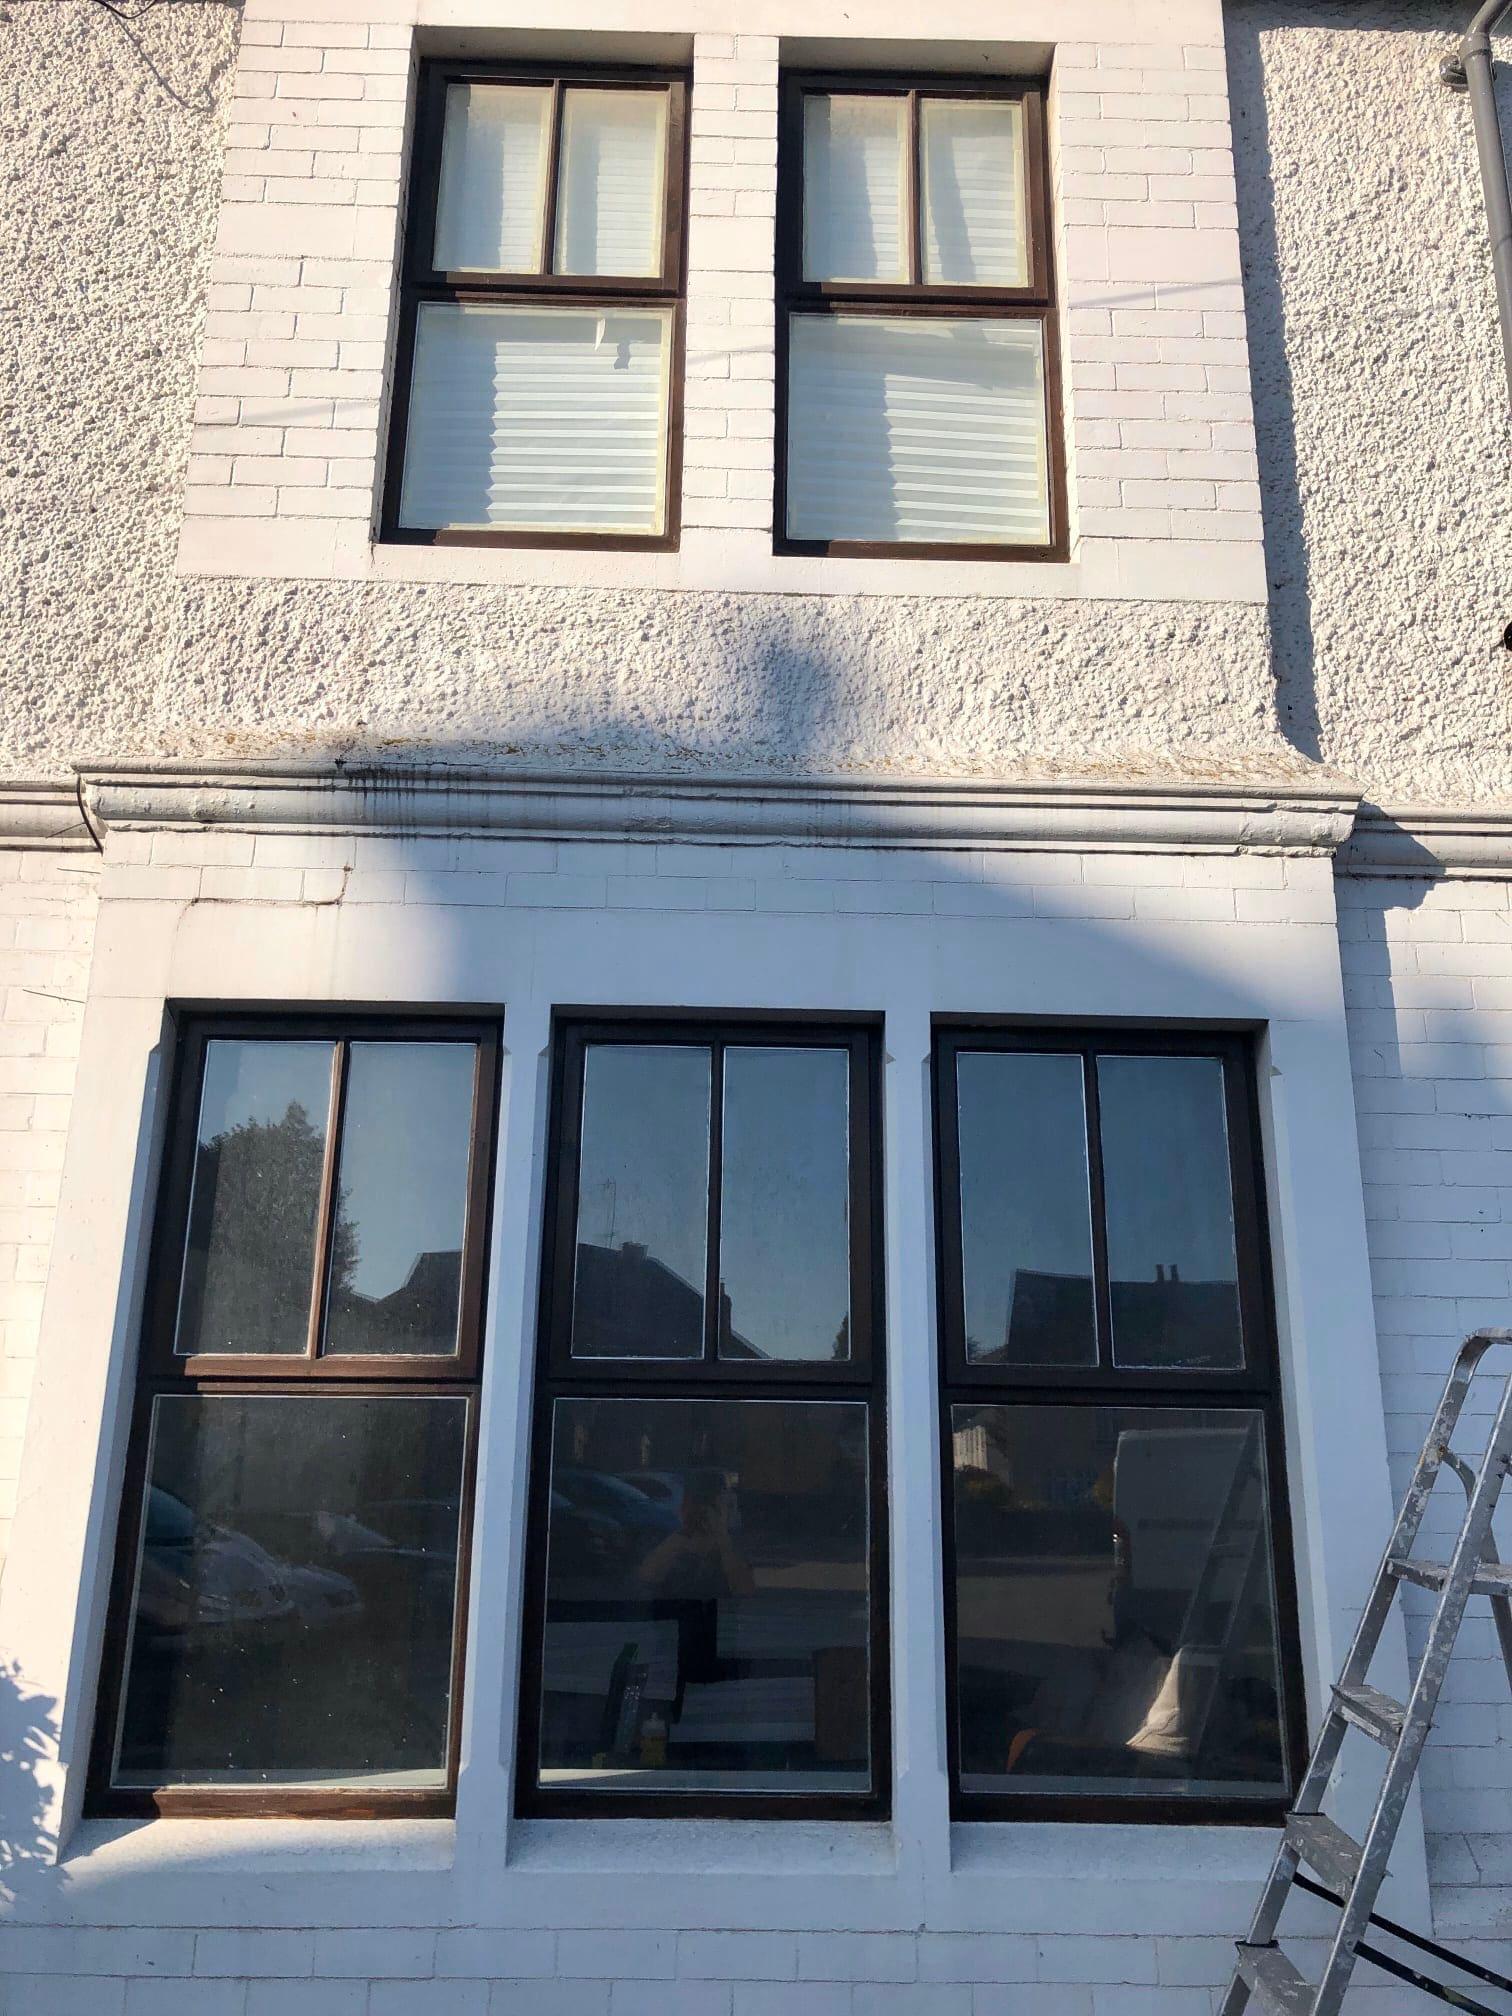 Images Window & Door Repairs